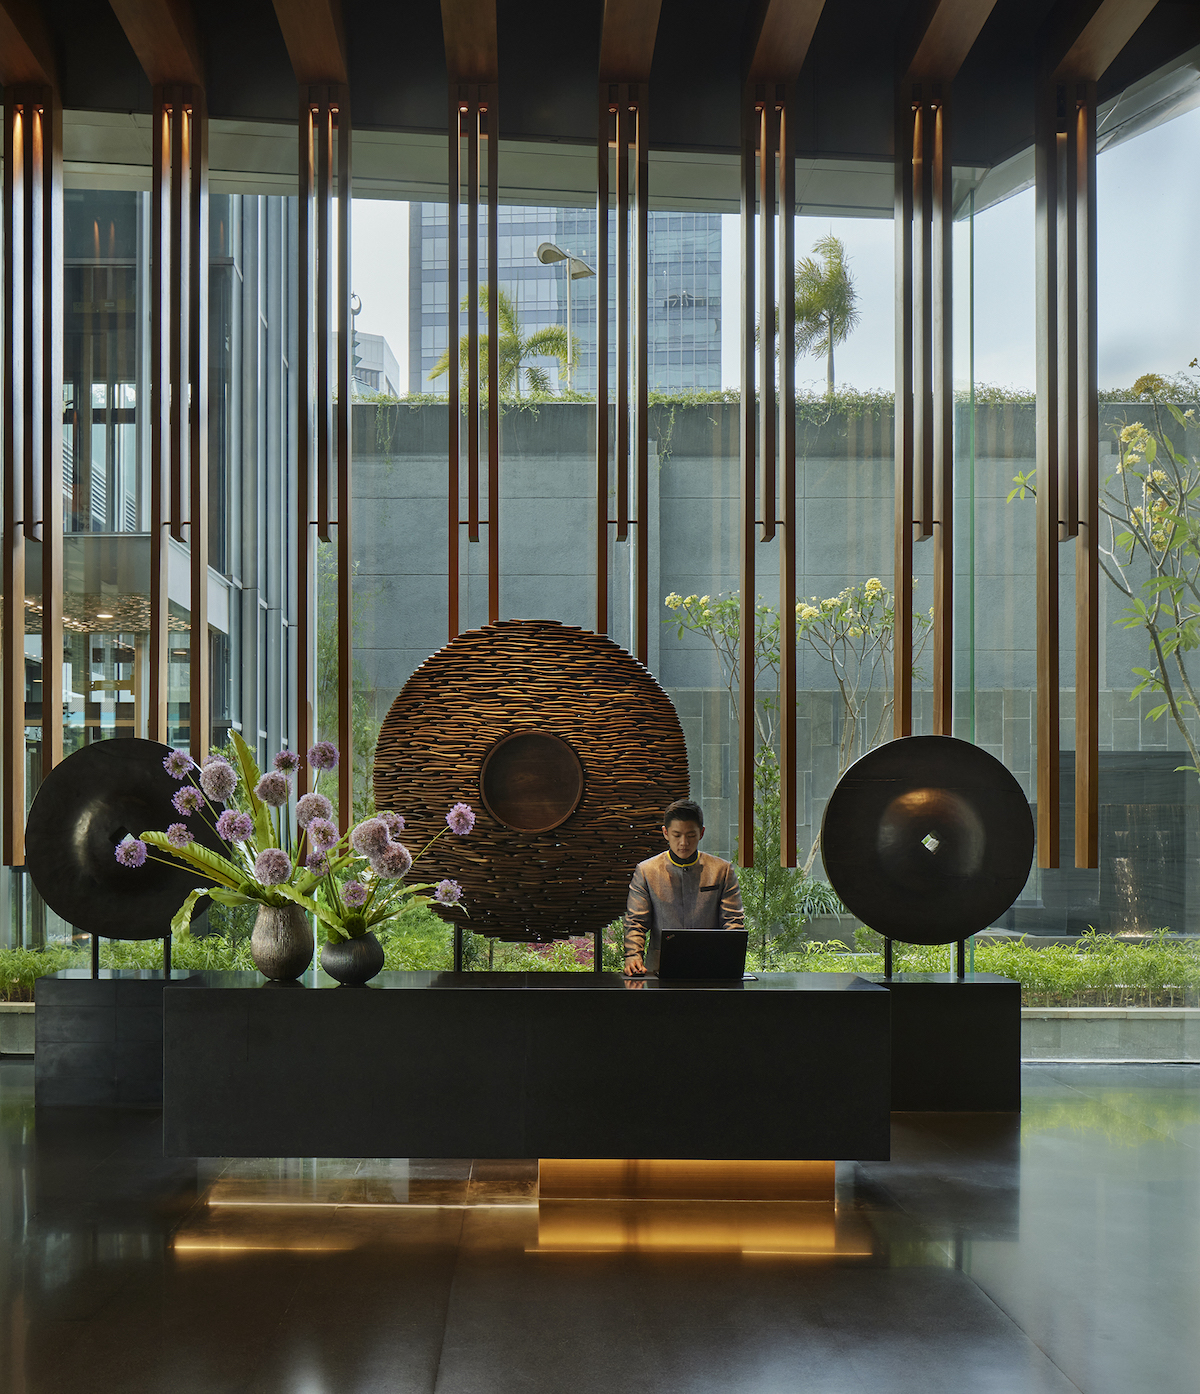 A dramatic lobby inside Park Hyatt Jakarta with gongs as backdrops